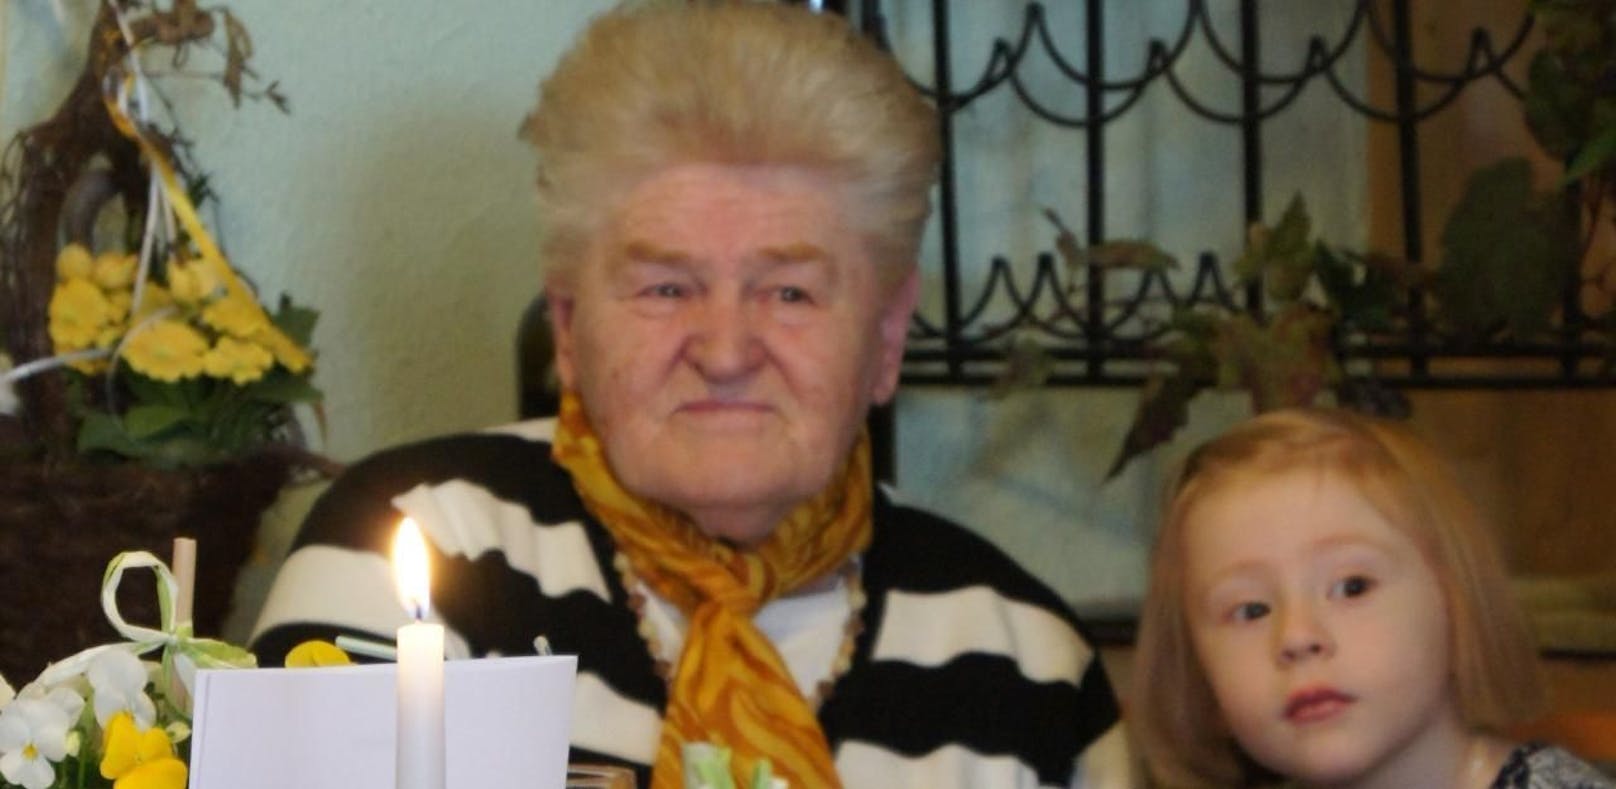 Familie gratuliert Oma via "Heute" zu ihrem 84er